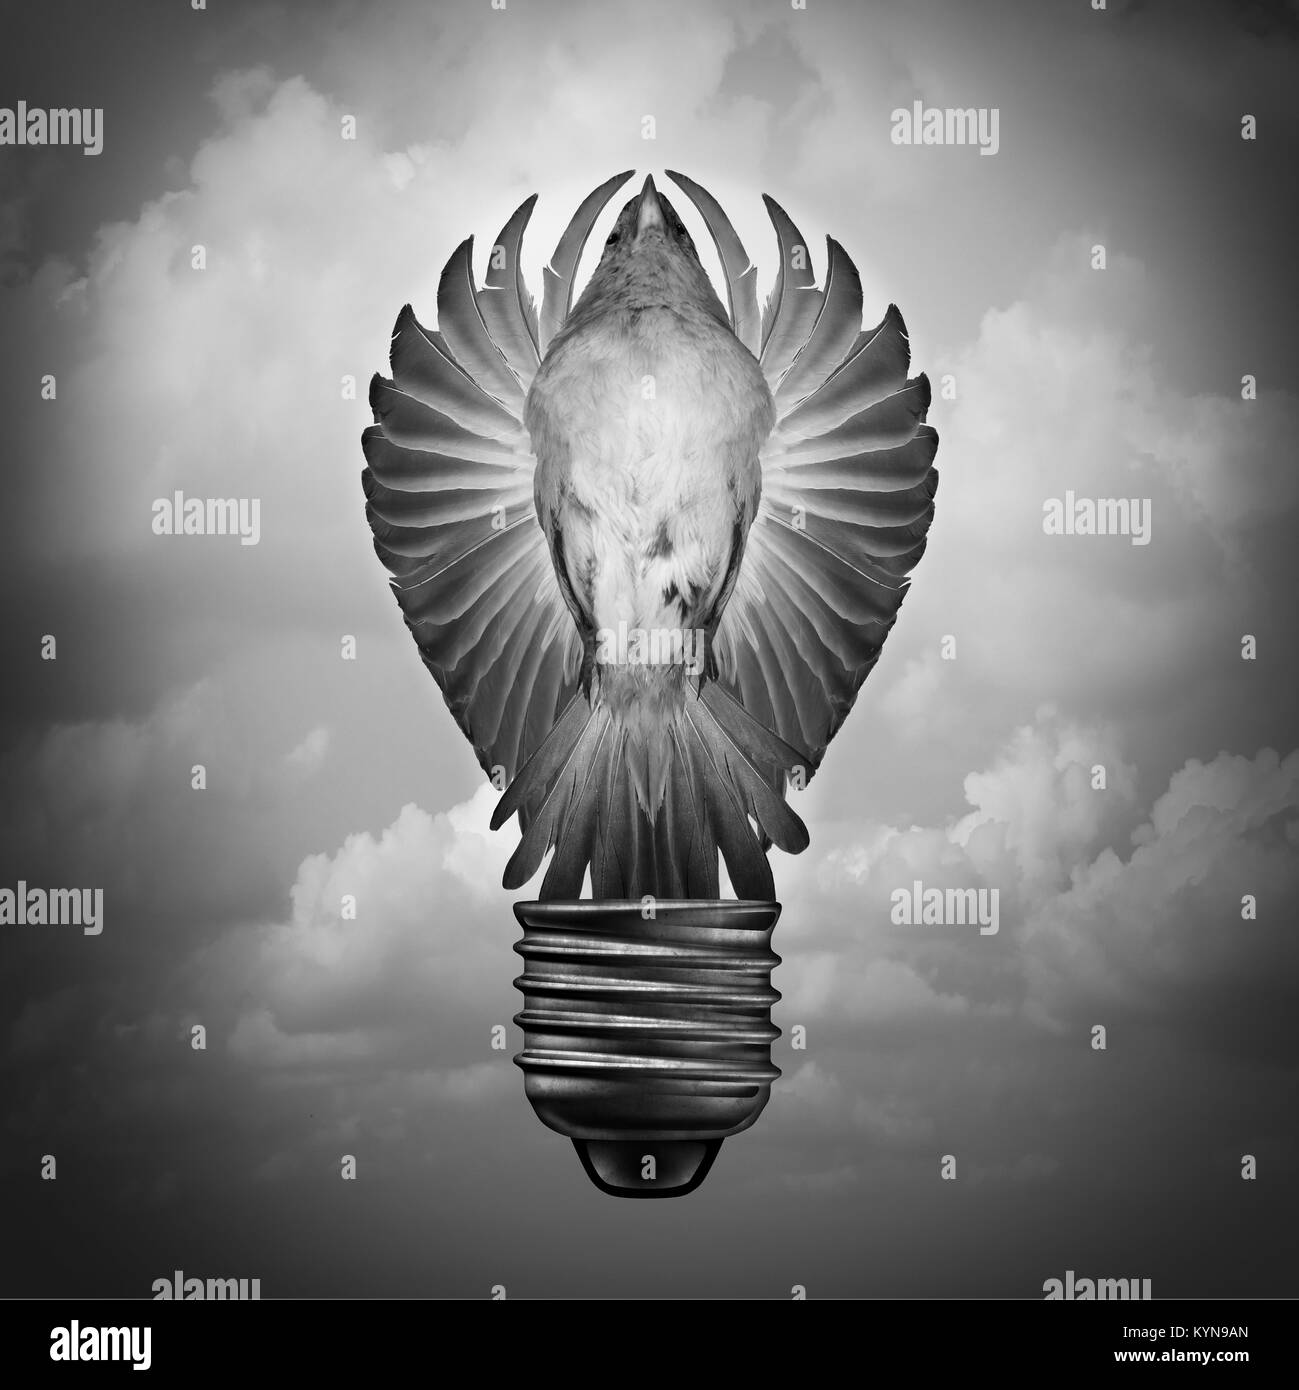 Concetto creativo come un idea surreale e innovazione metafora con un uccello con ali aperte conformata come una lampadina con 3D'illustrazione degli elementi. Foto Stock